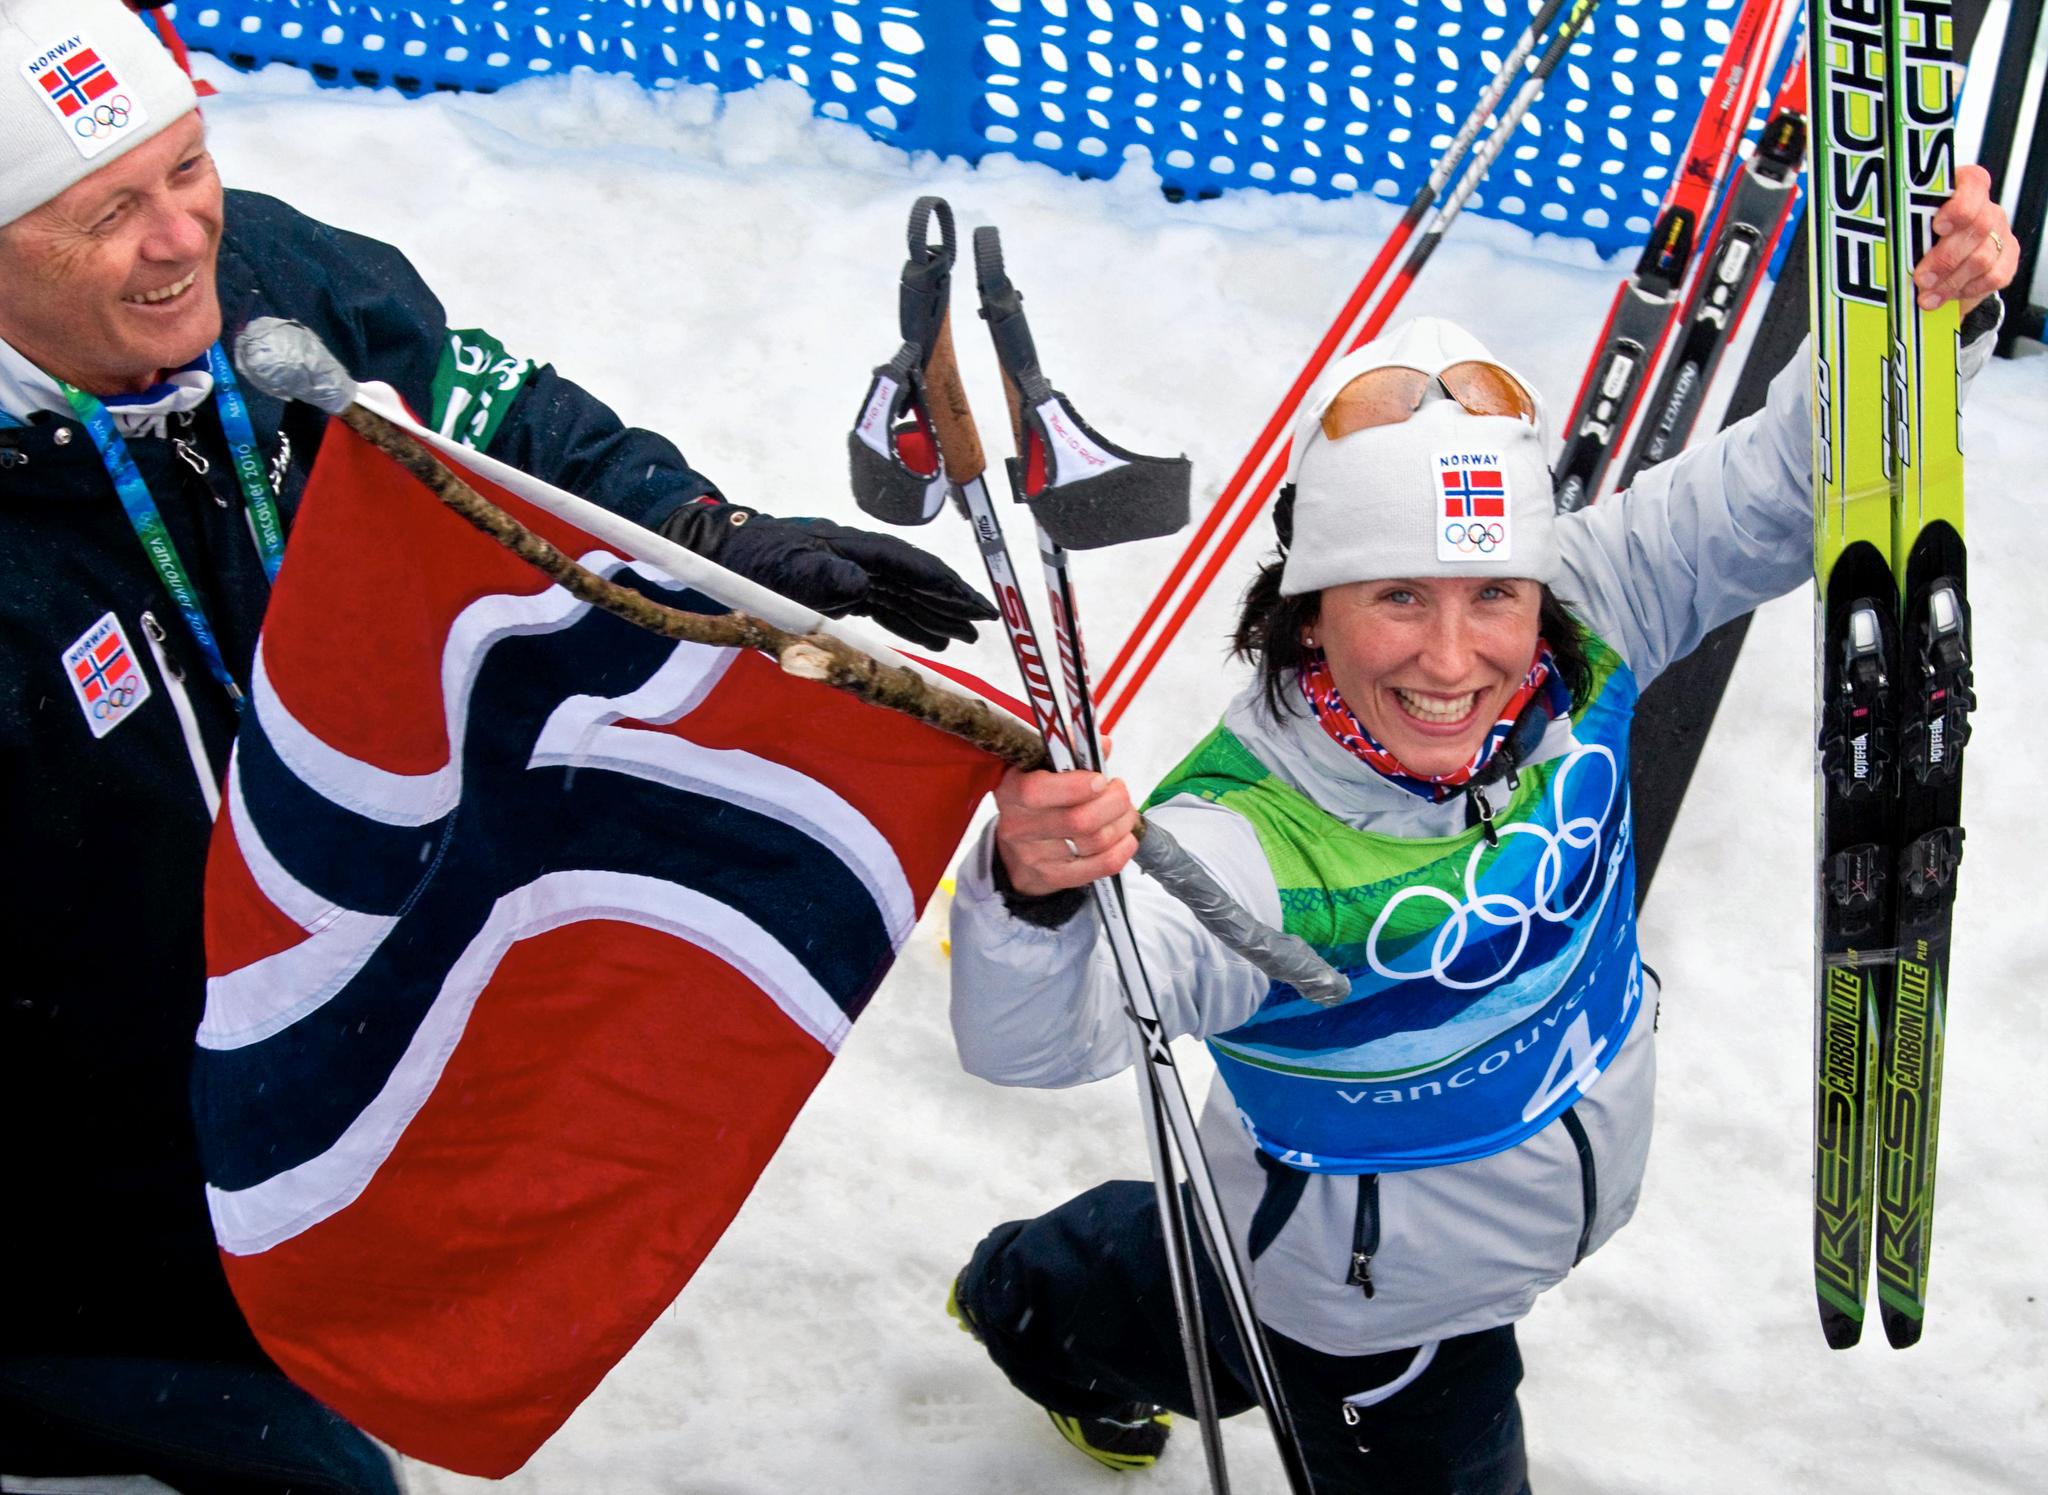 Dette bildet er tatt ett år etter den store skuffelsen i VM i Liberec. Det er OL i Vancouver i 2010 og Marit Bjørgen hadde akkurat gått Norge inn til gull på stafetten. 